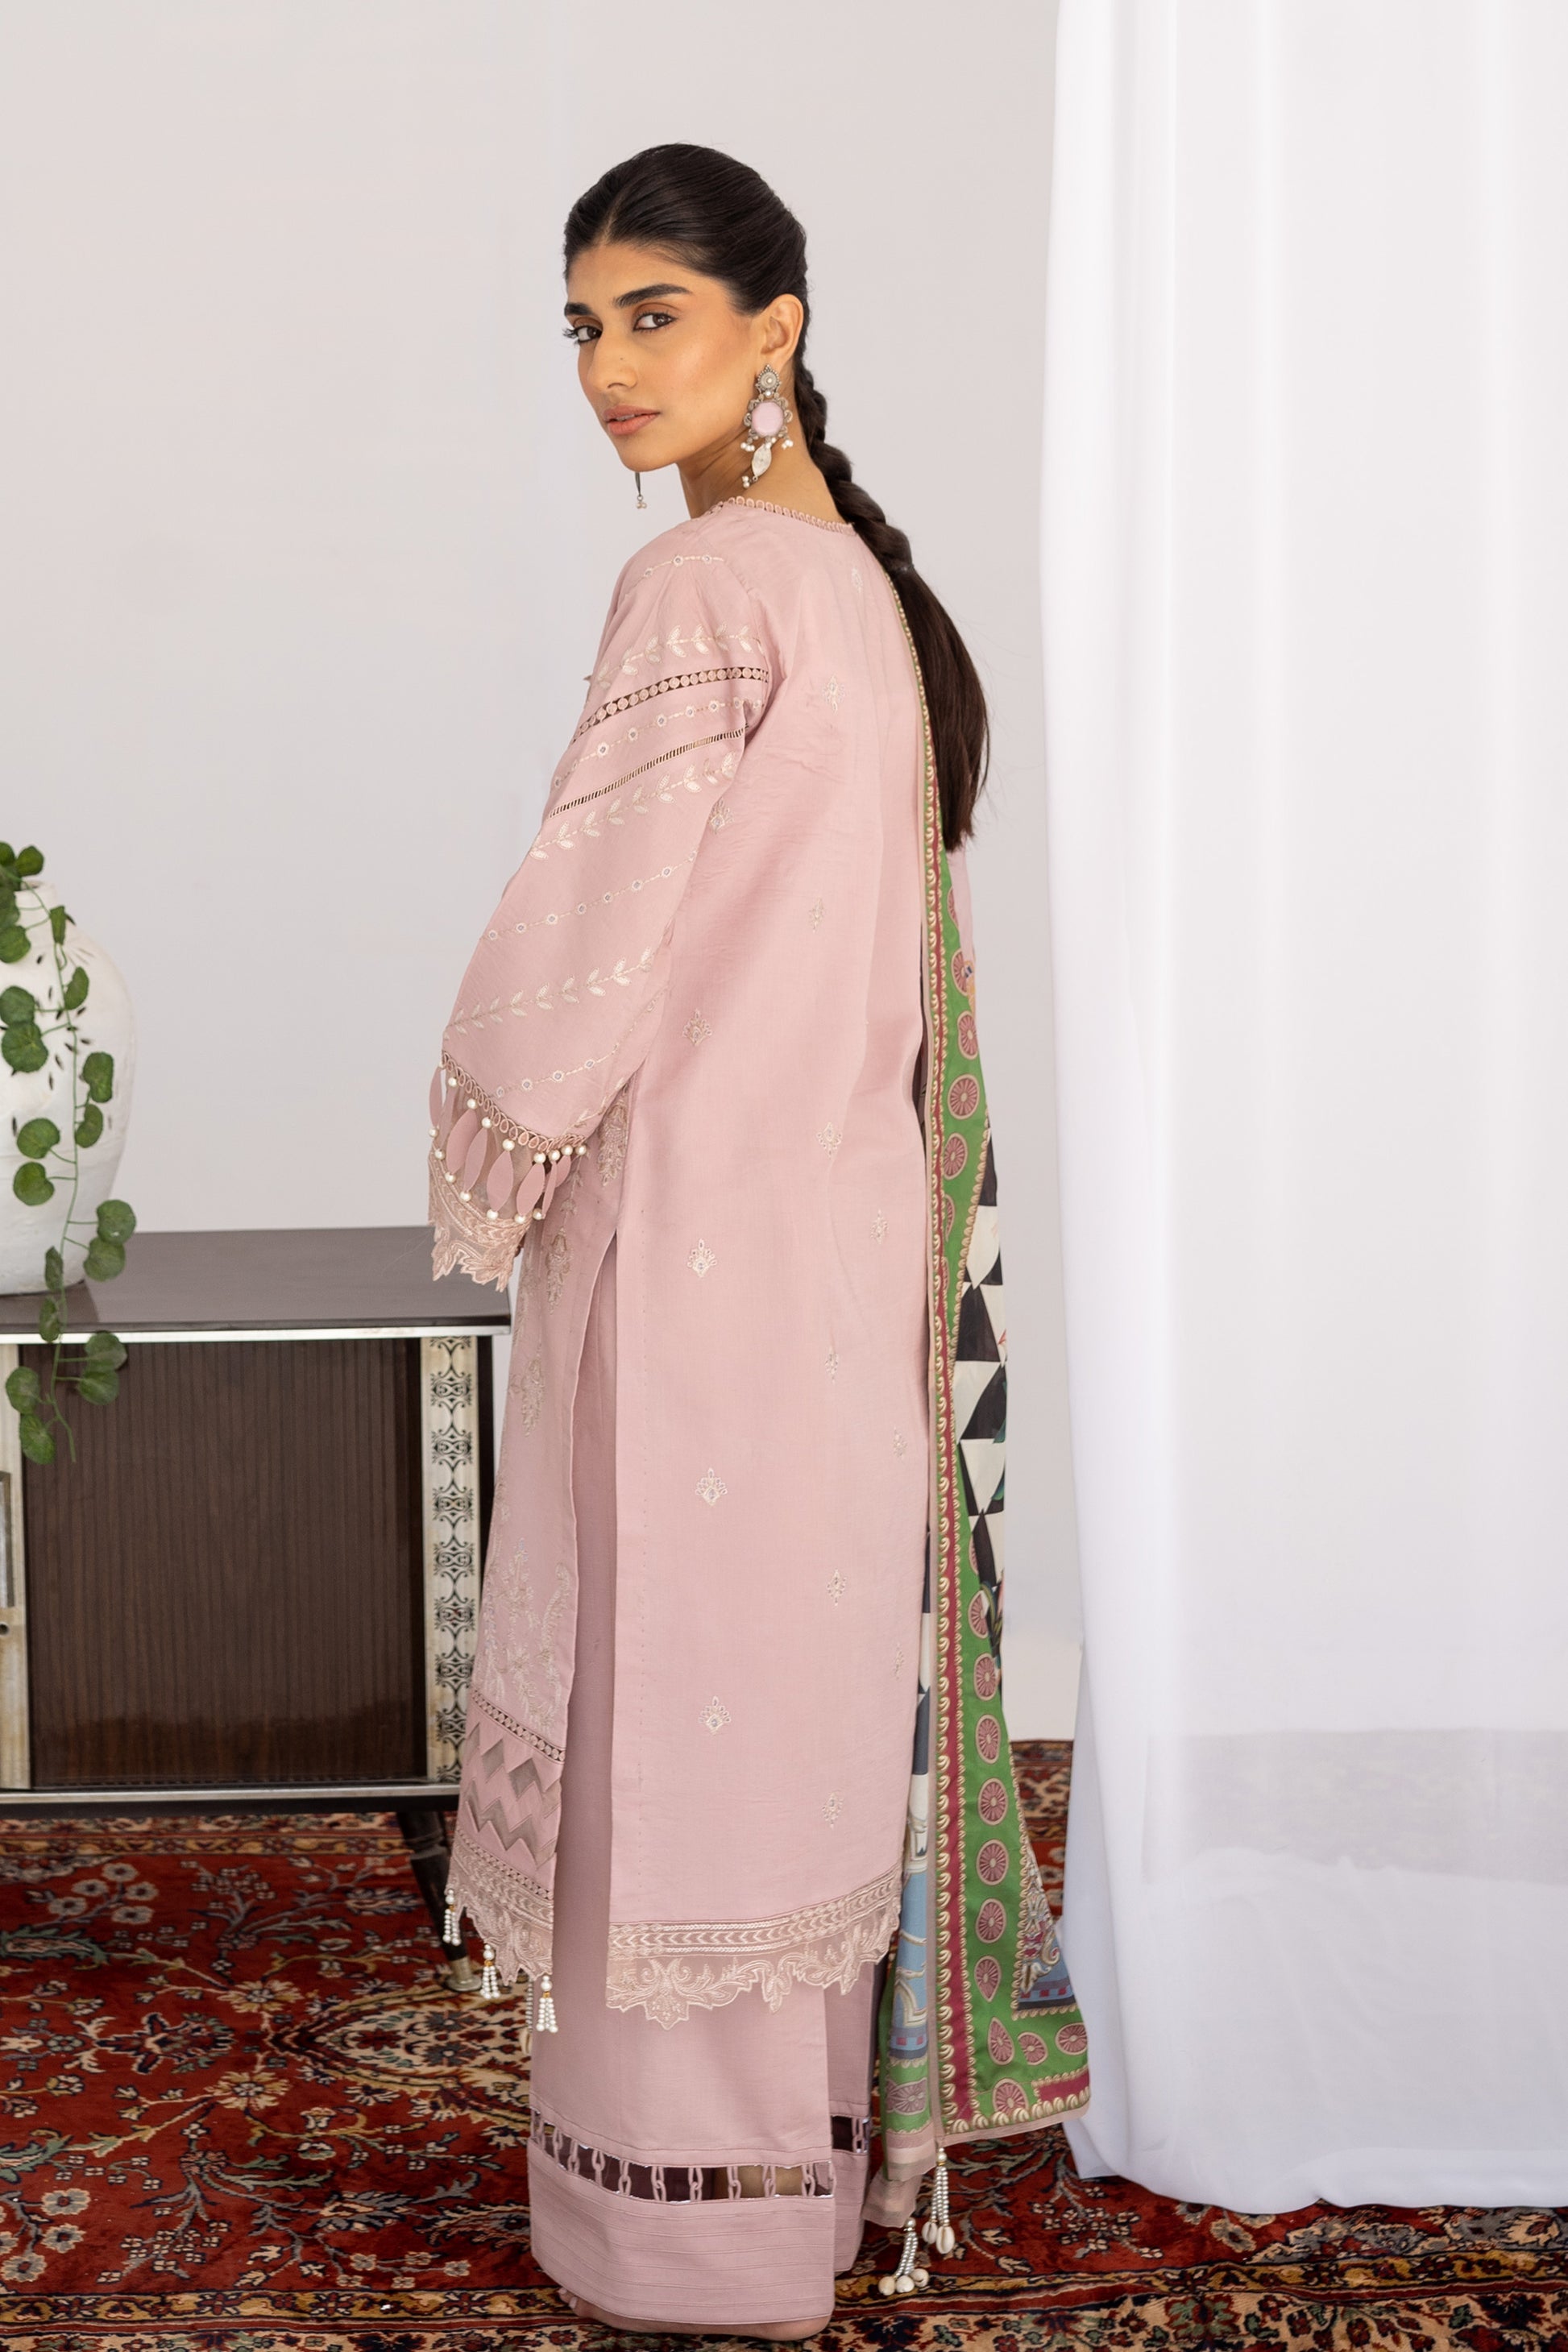 Shop Now - Kasmiri Naz - Saheliyan - Eid Edit 2023 - Gisele - Shahana Collection UK - Wedding and Bridal Party Dresses 